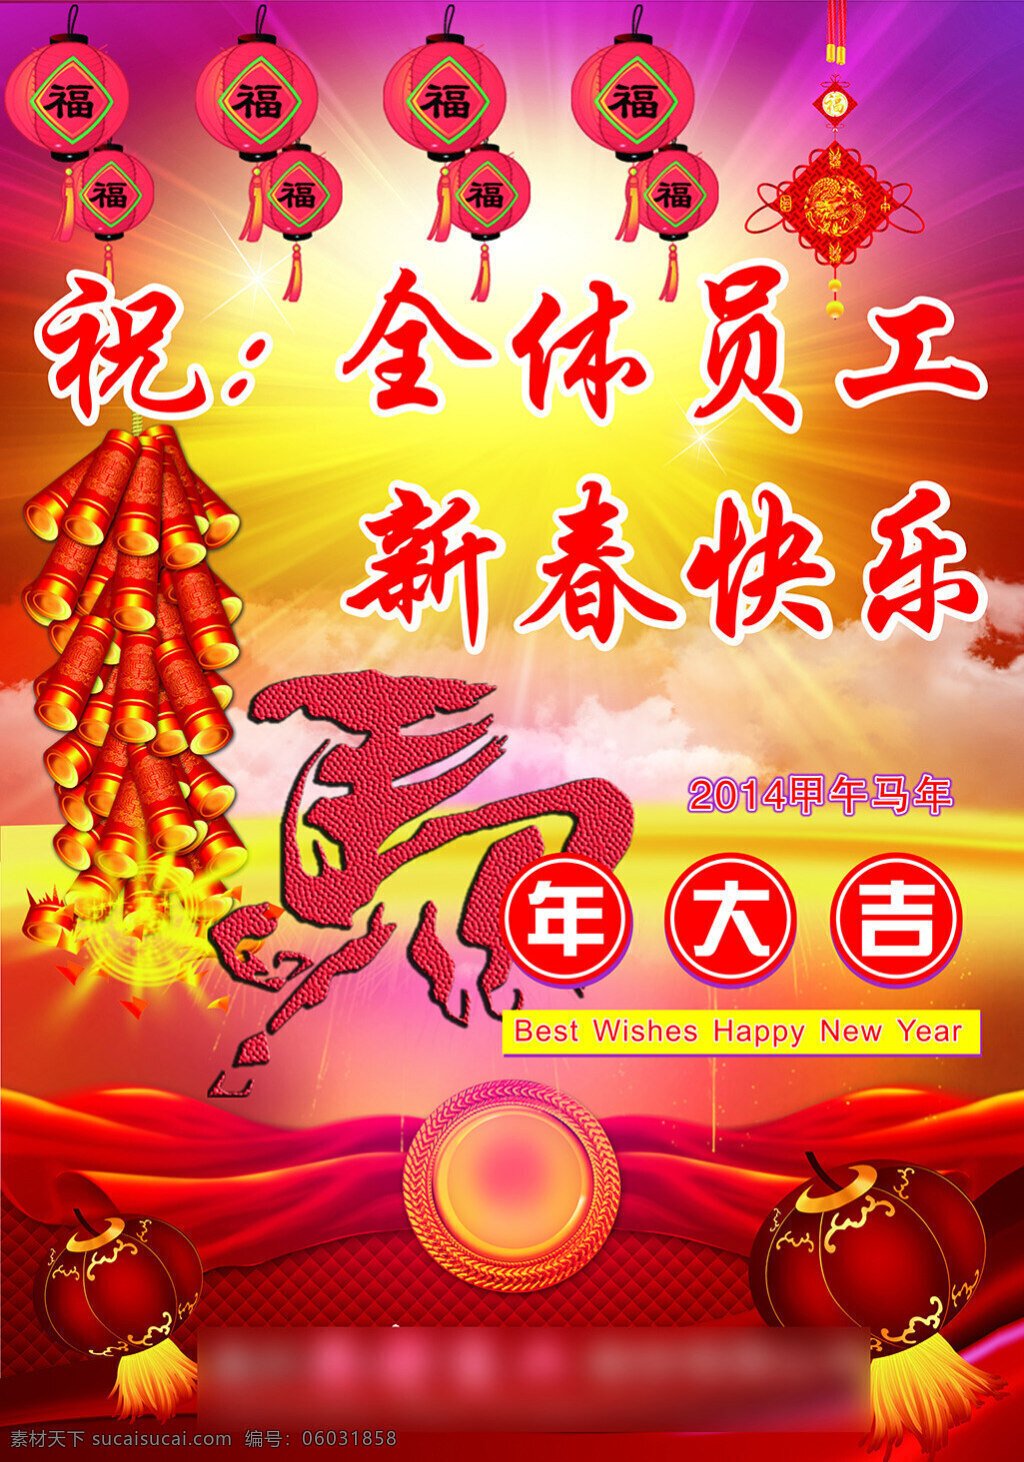 祝 全体 员工 新年 快乐 展板 红色 共享 新春快乐 企业 马年